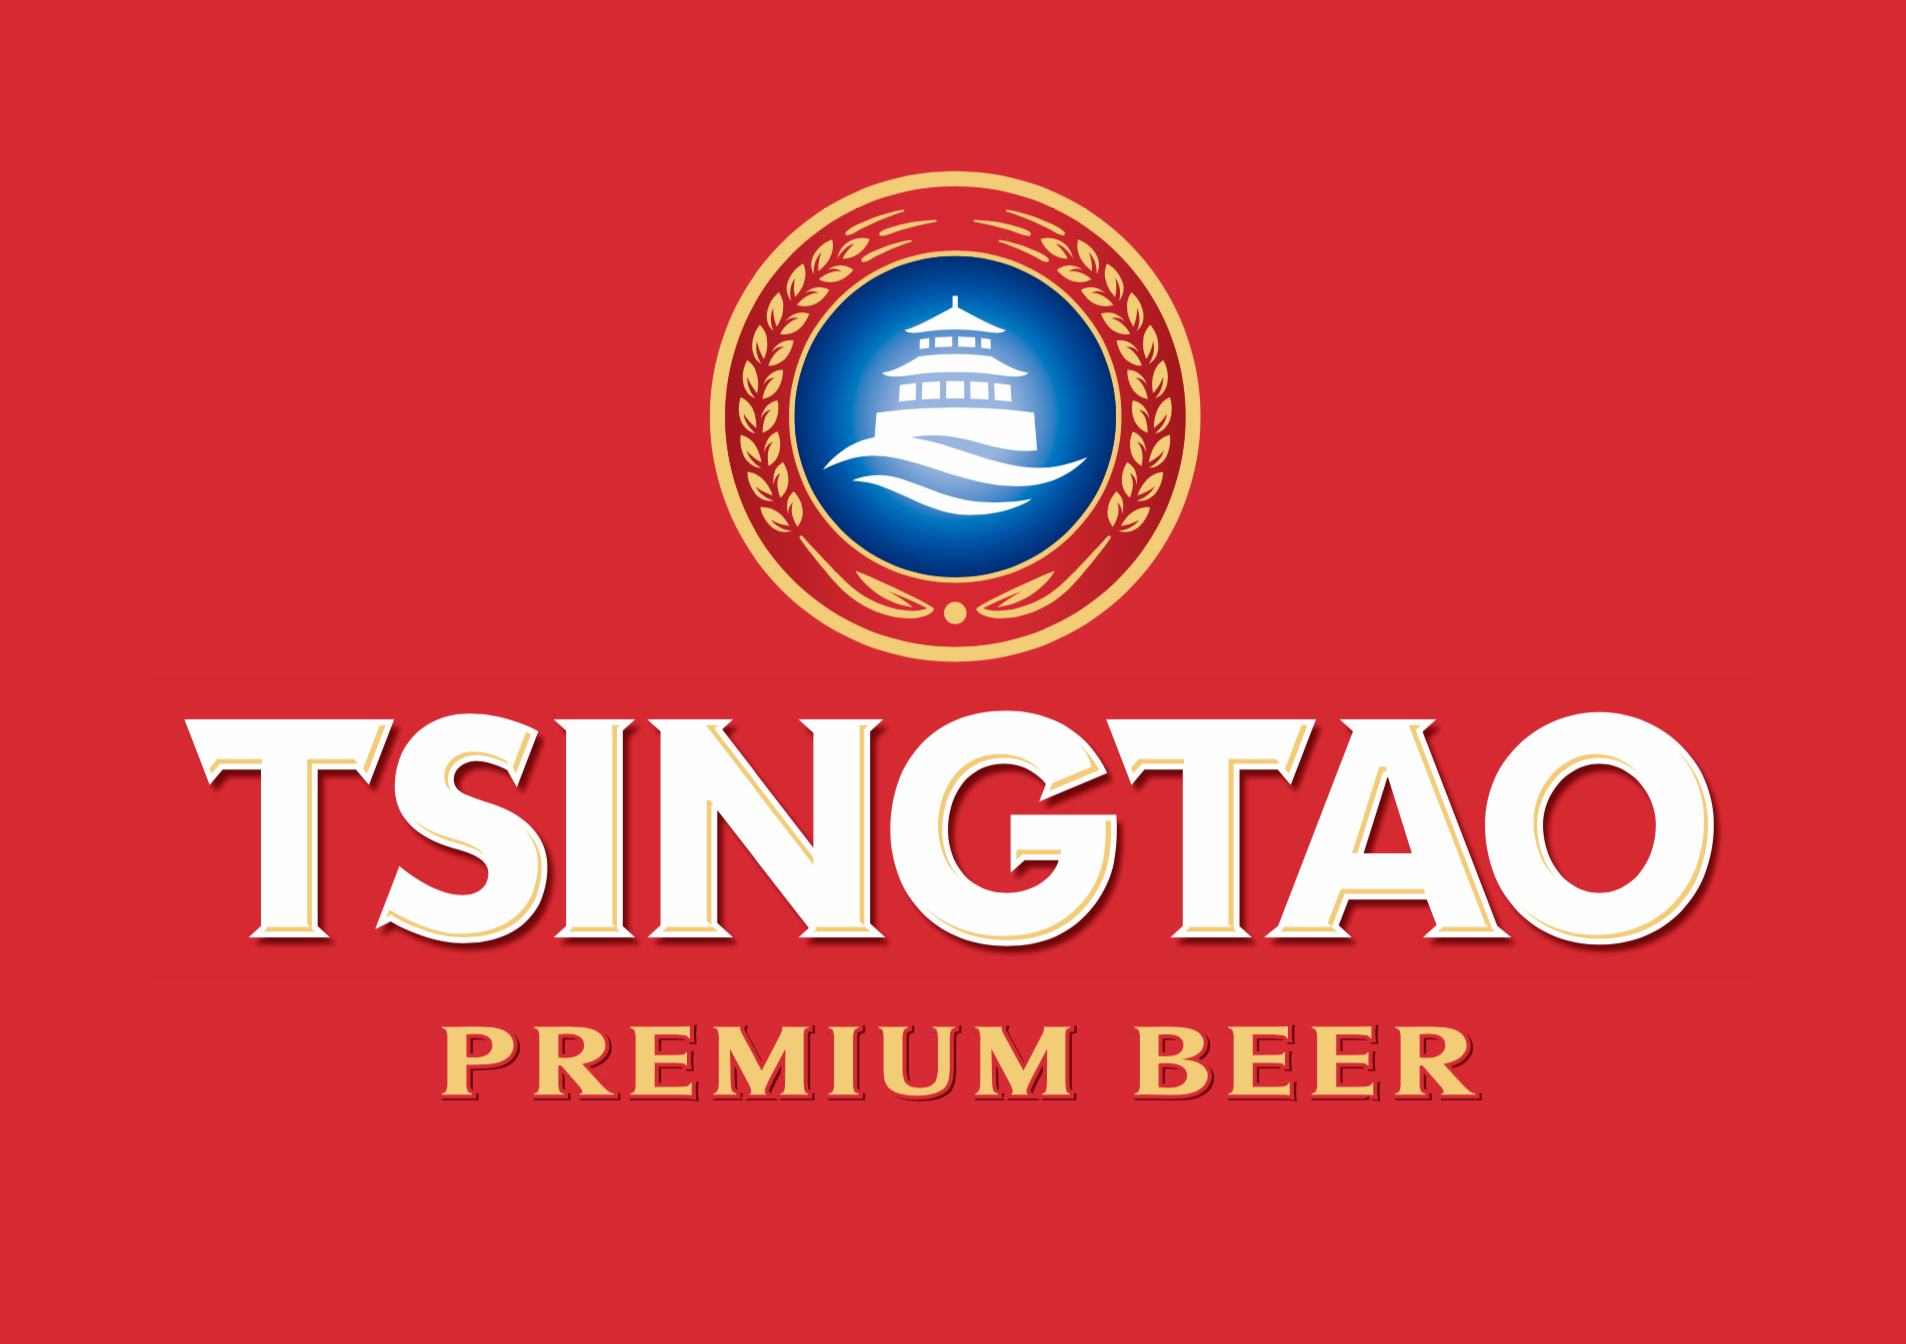 tsingtao logo.png